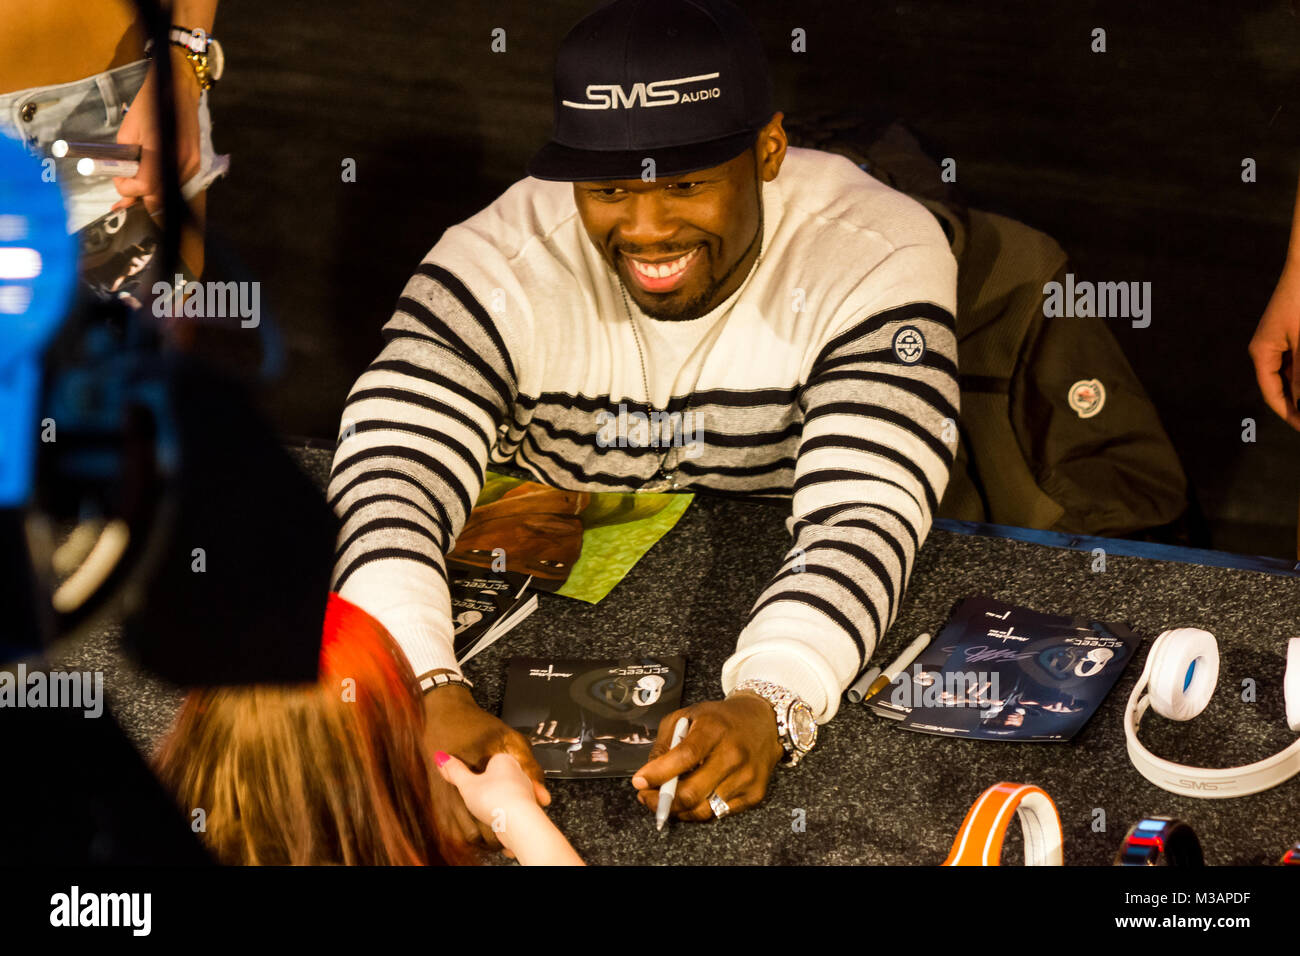 50 Cent ( Curtis James Jackson ), US-Amerikanischer Rapmusiker, stellt neue Kopfhörer der Firma SMS Audio mit anschließender Autogrammstunde im ALEXA (Einkaufscenter) in Berlin vor. Stock Photo